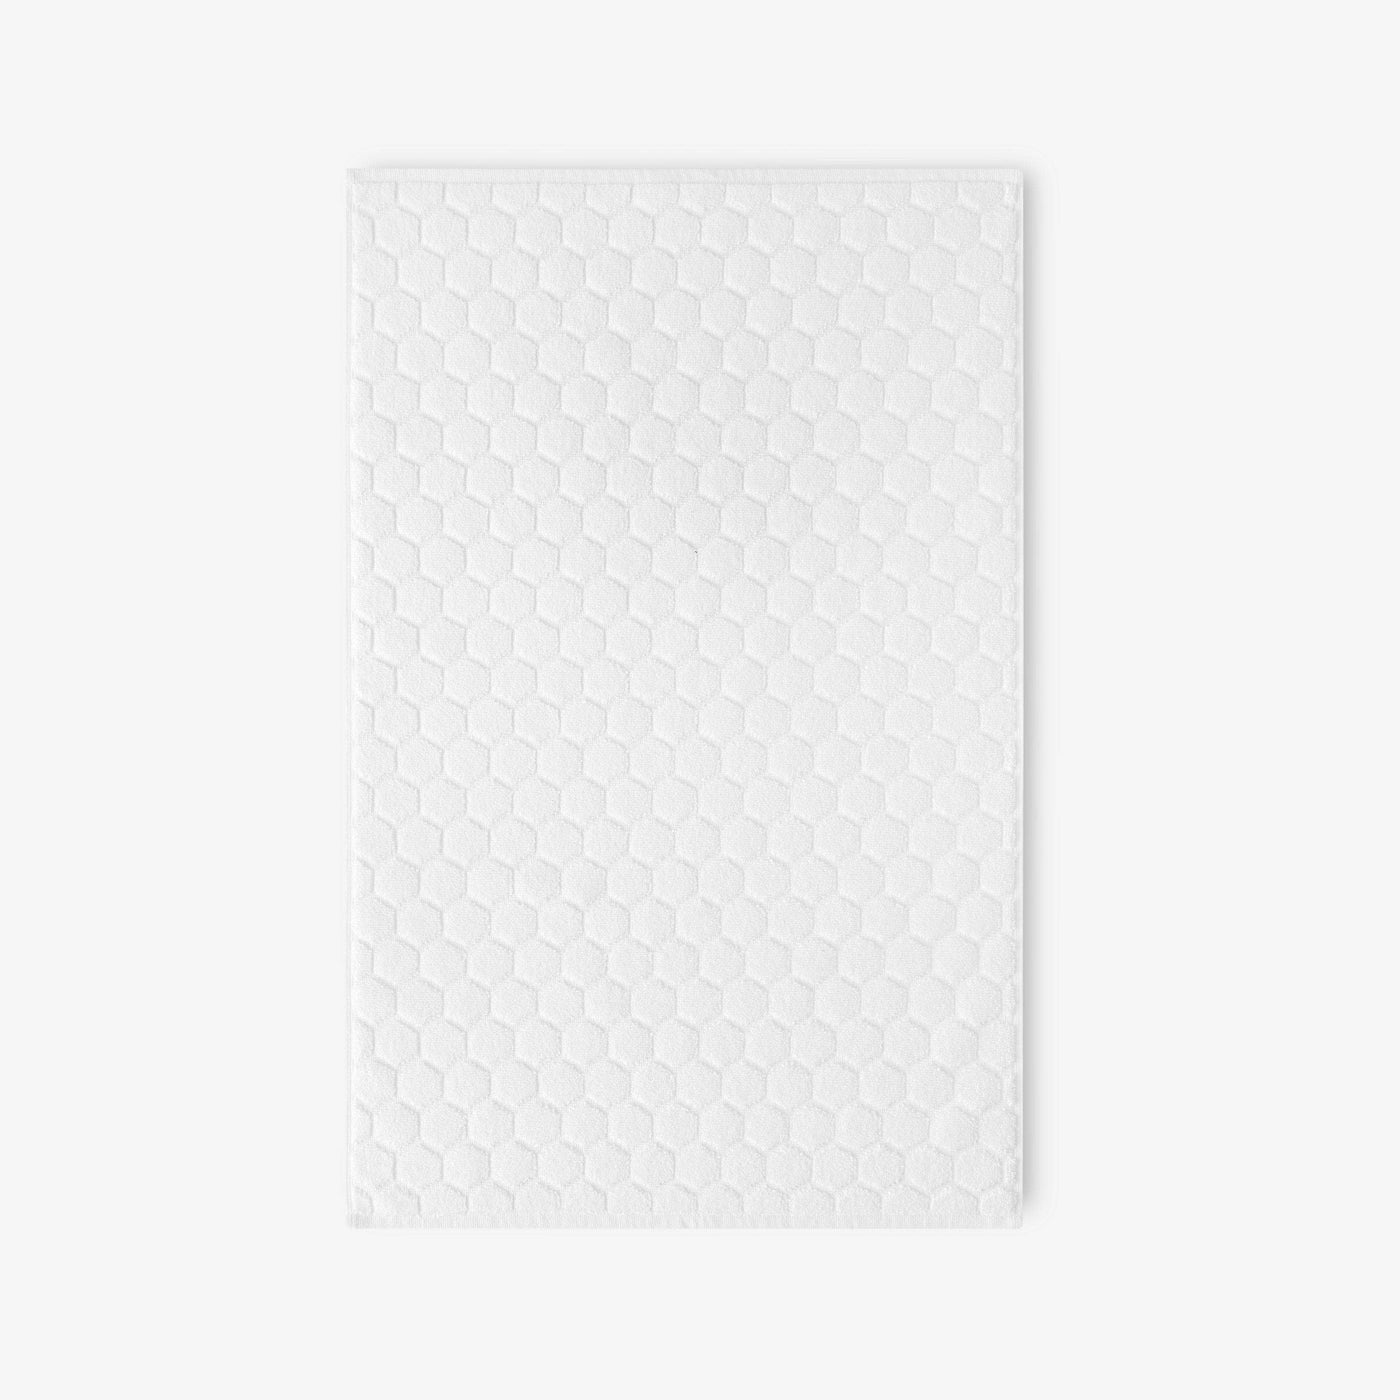 Gary Textured 100% Turkish Cotton Bath Mat, White, 50x80 cm 1